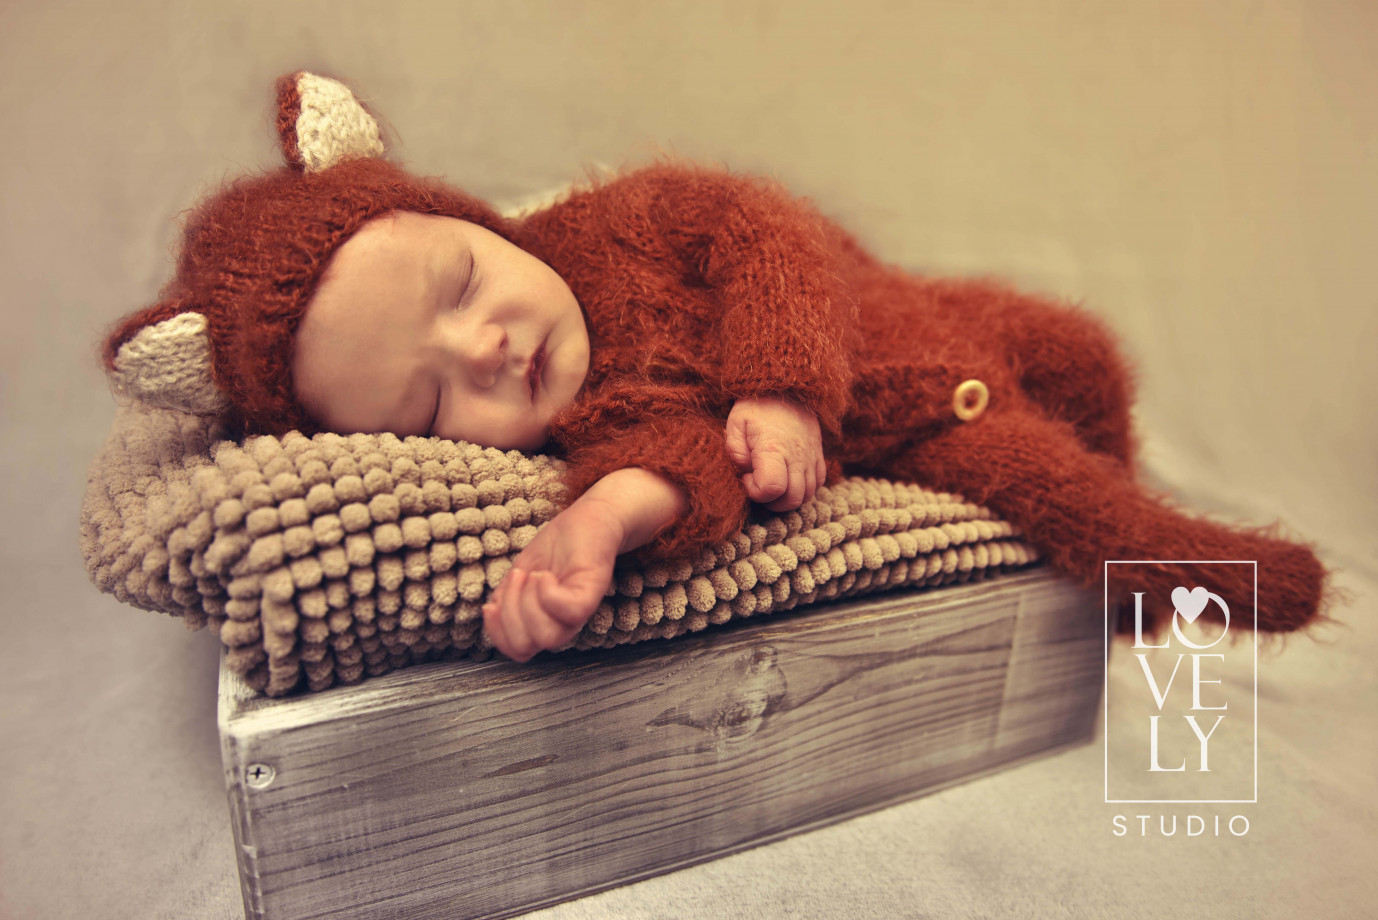 fotograf lodz lovely-studio portfolio zdjecia noworodkow sesje noworodkowe niemowlę